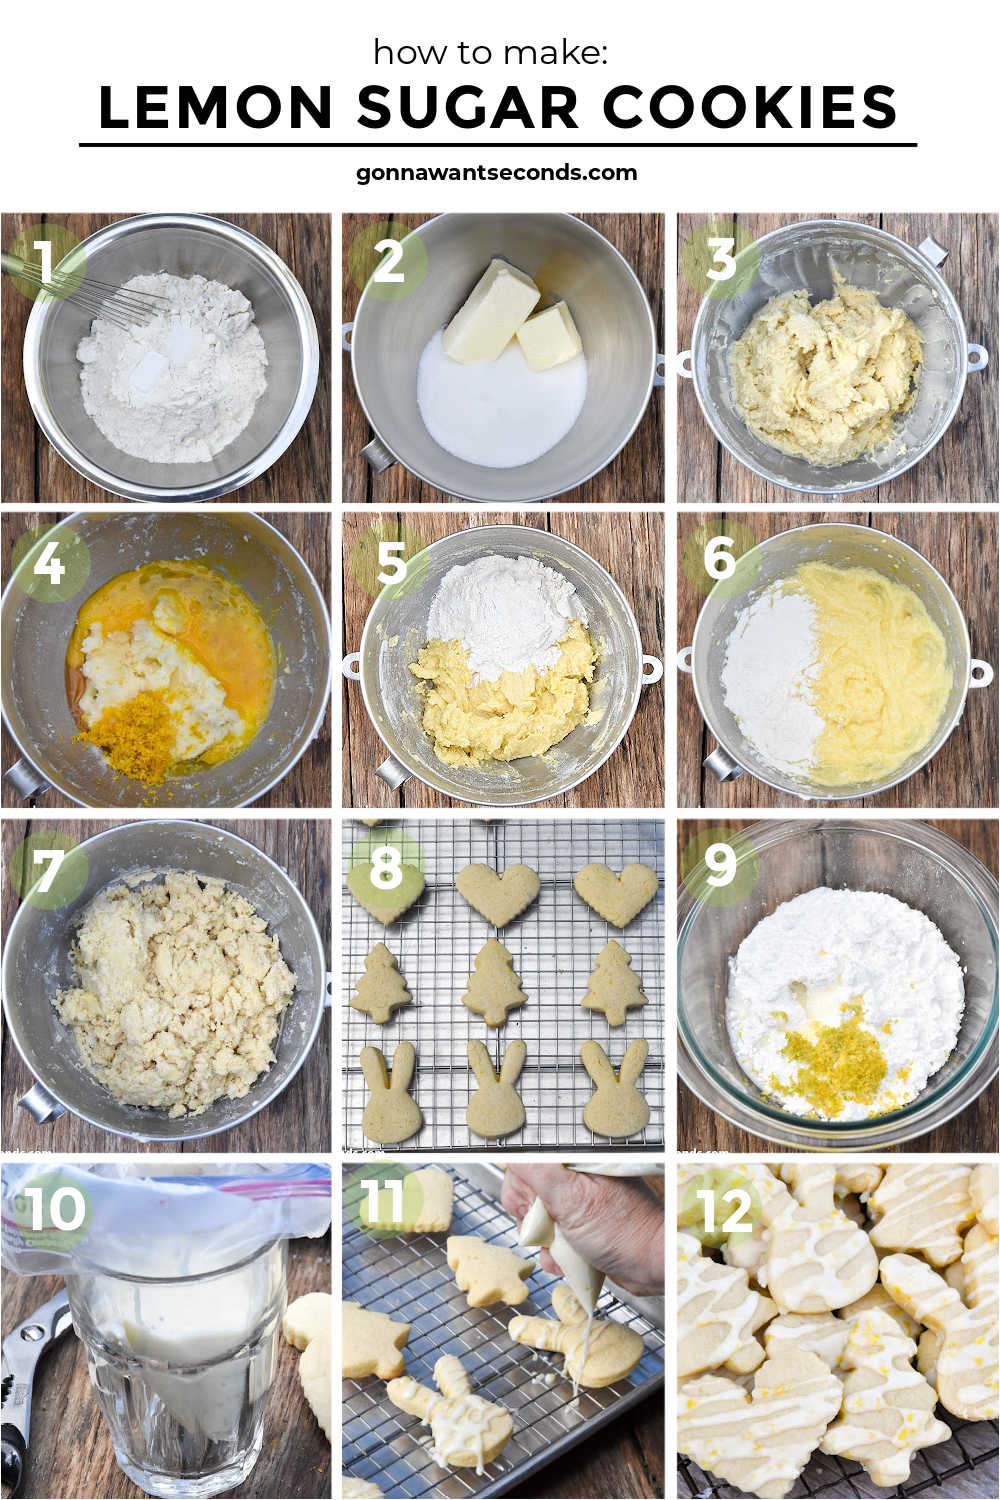 Step by step how to make lemon sugar cookies